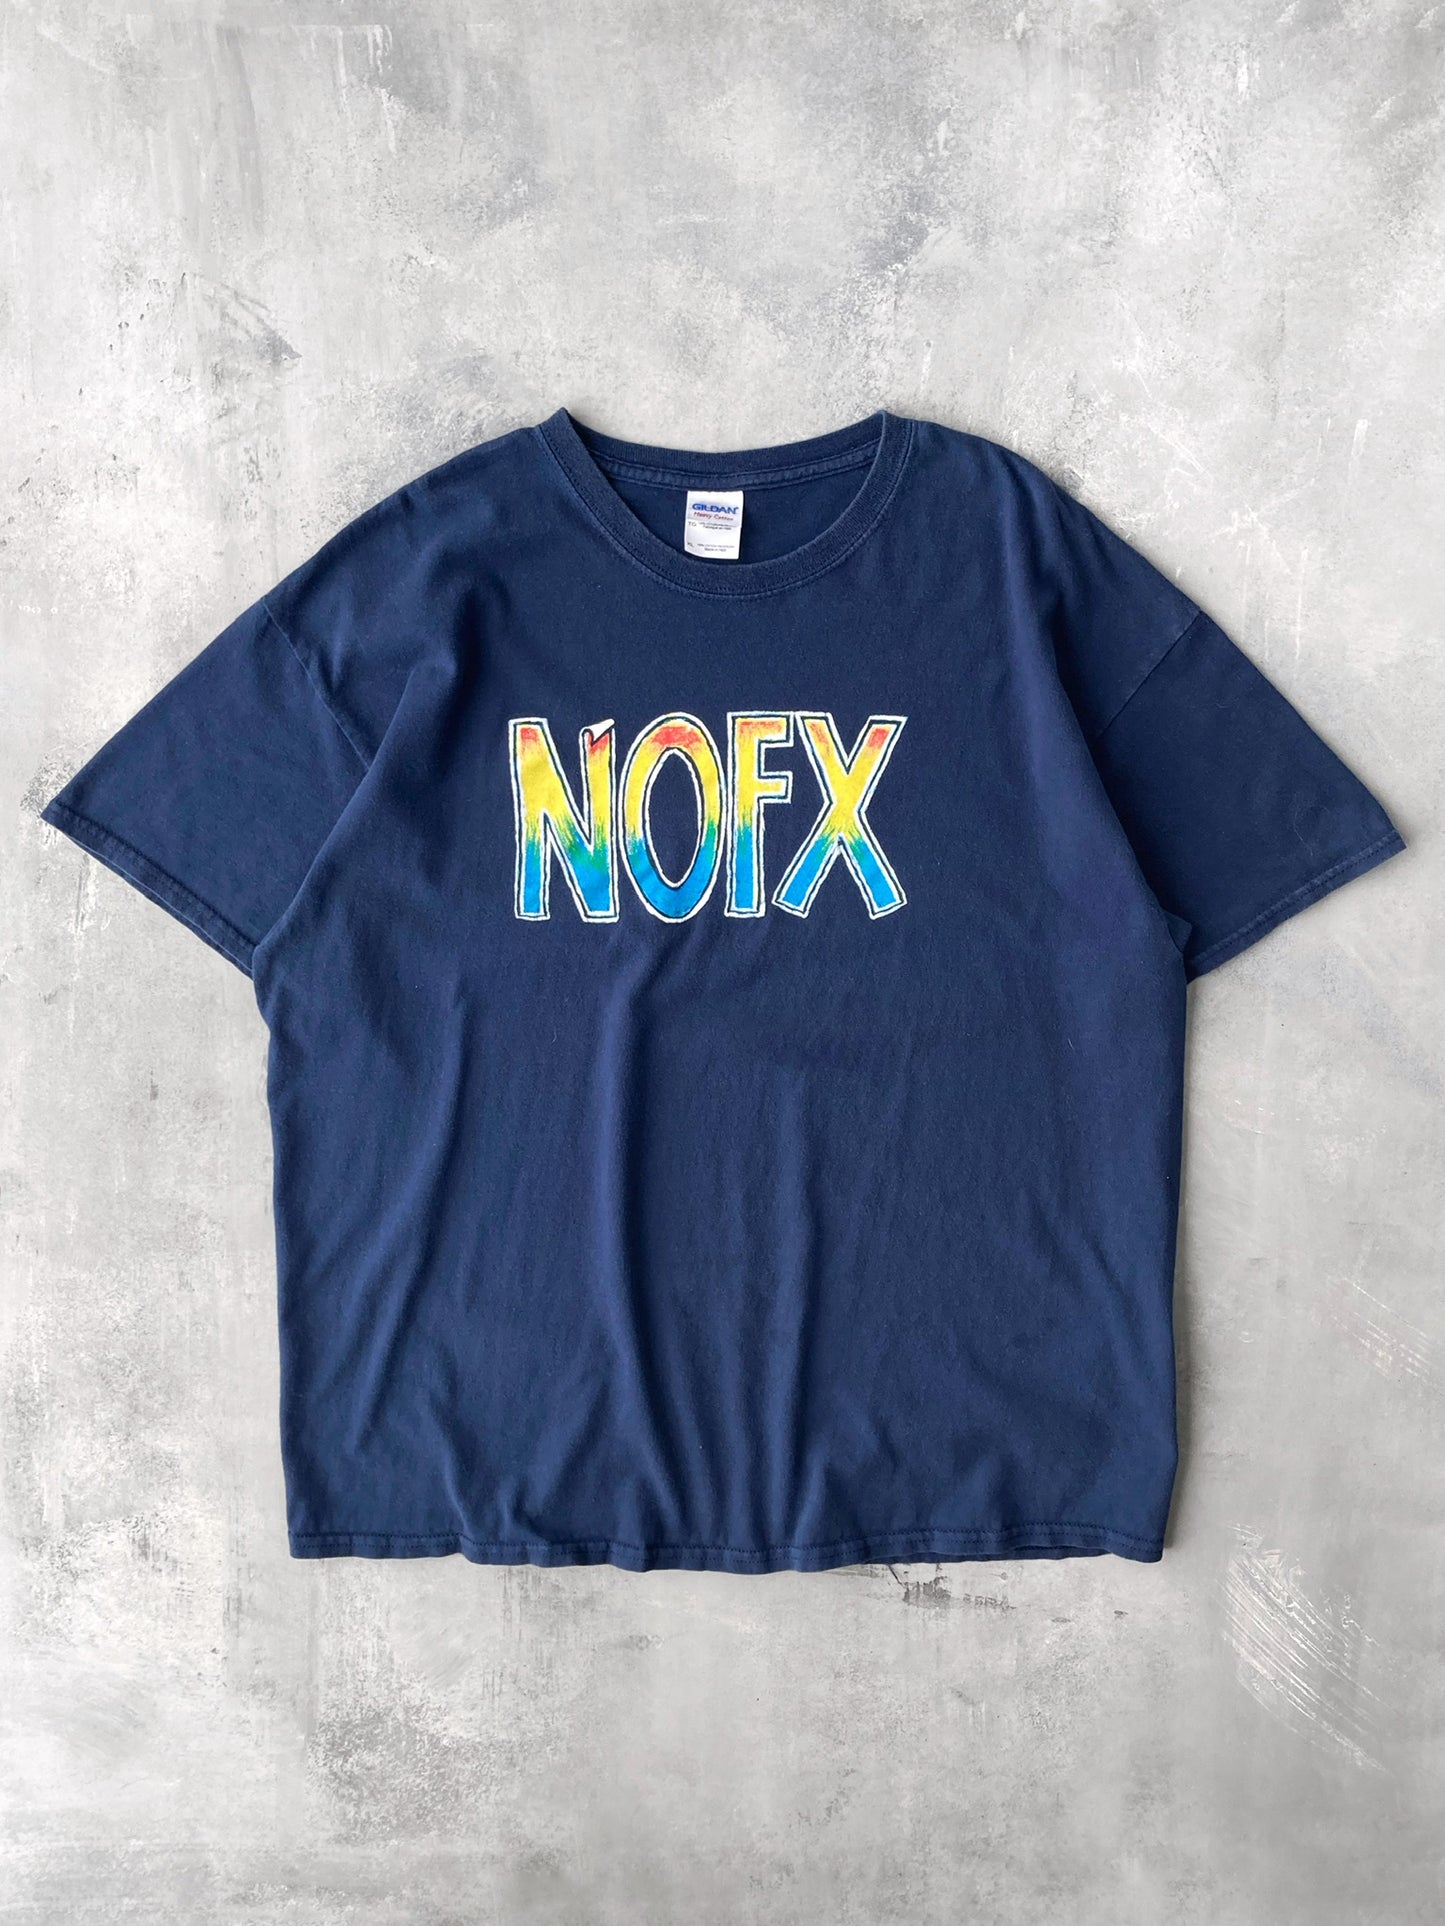 NOFX T-Shirt 00's - XL